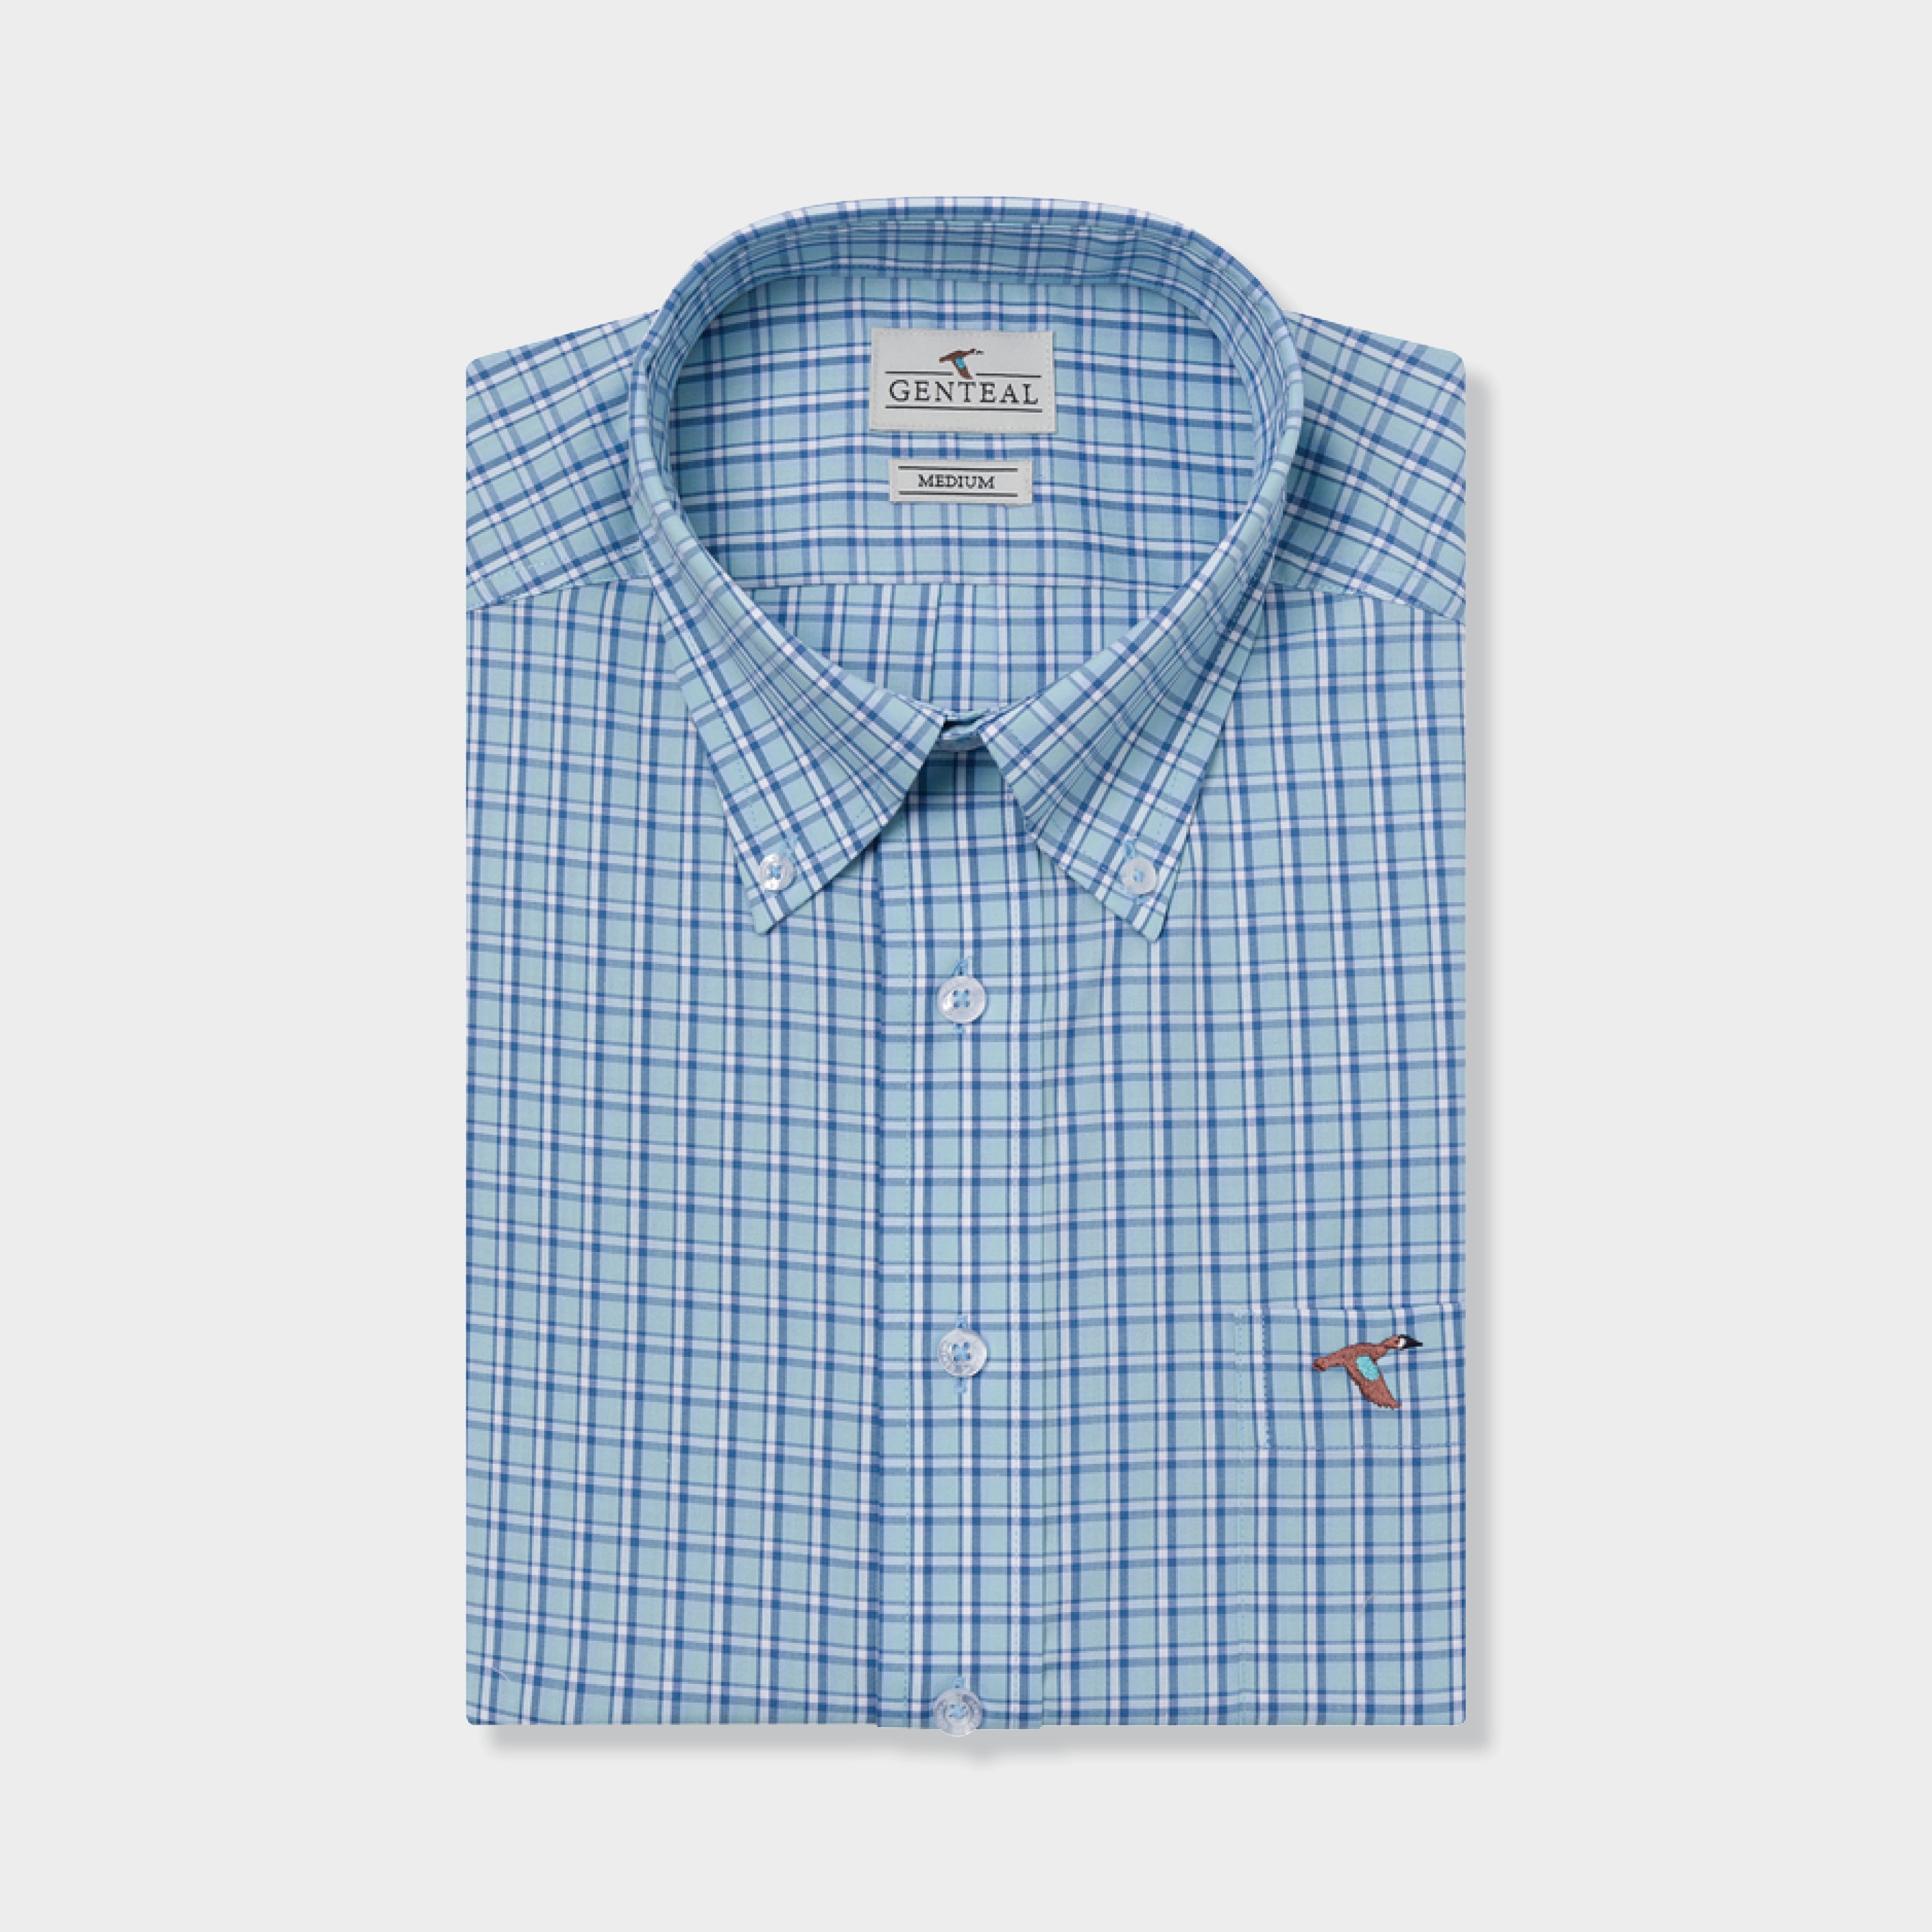 mens blue cotton sport shirt